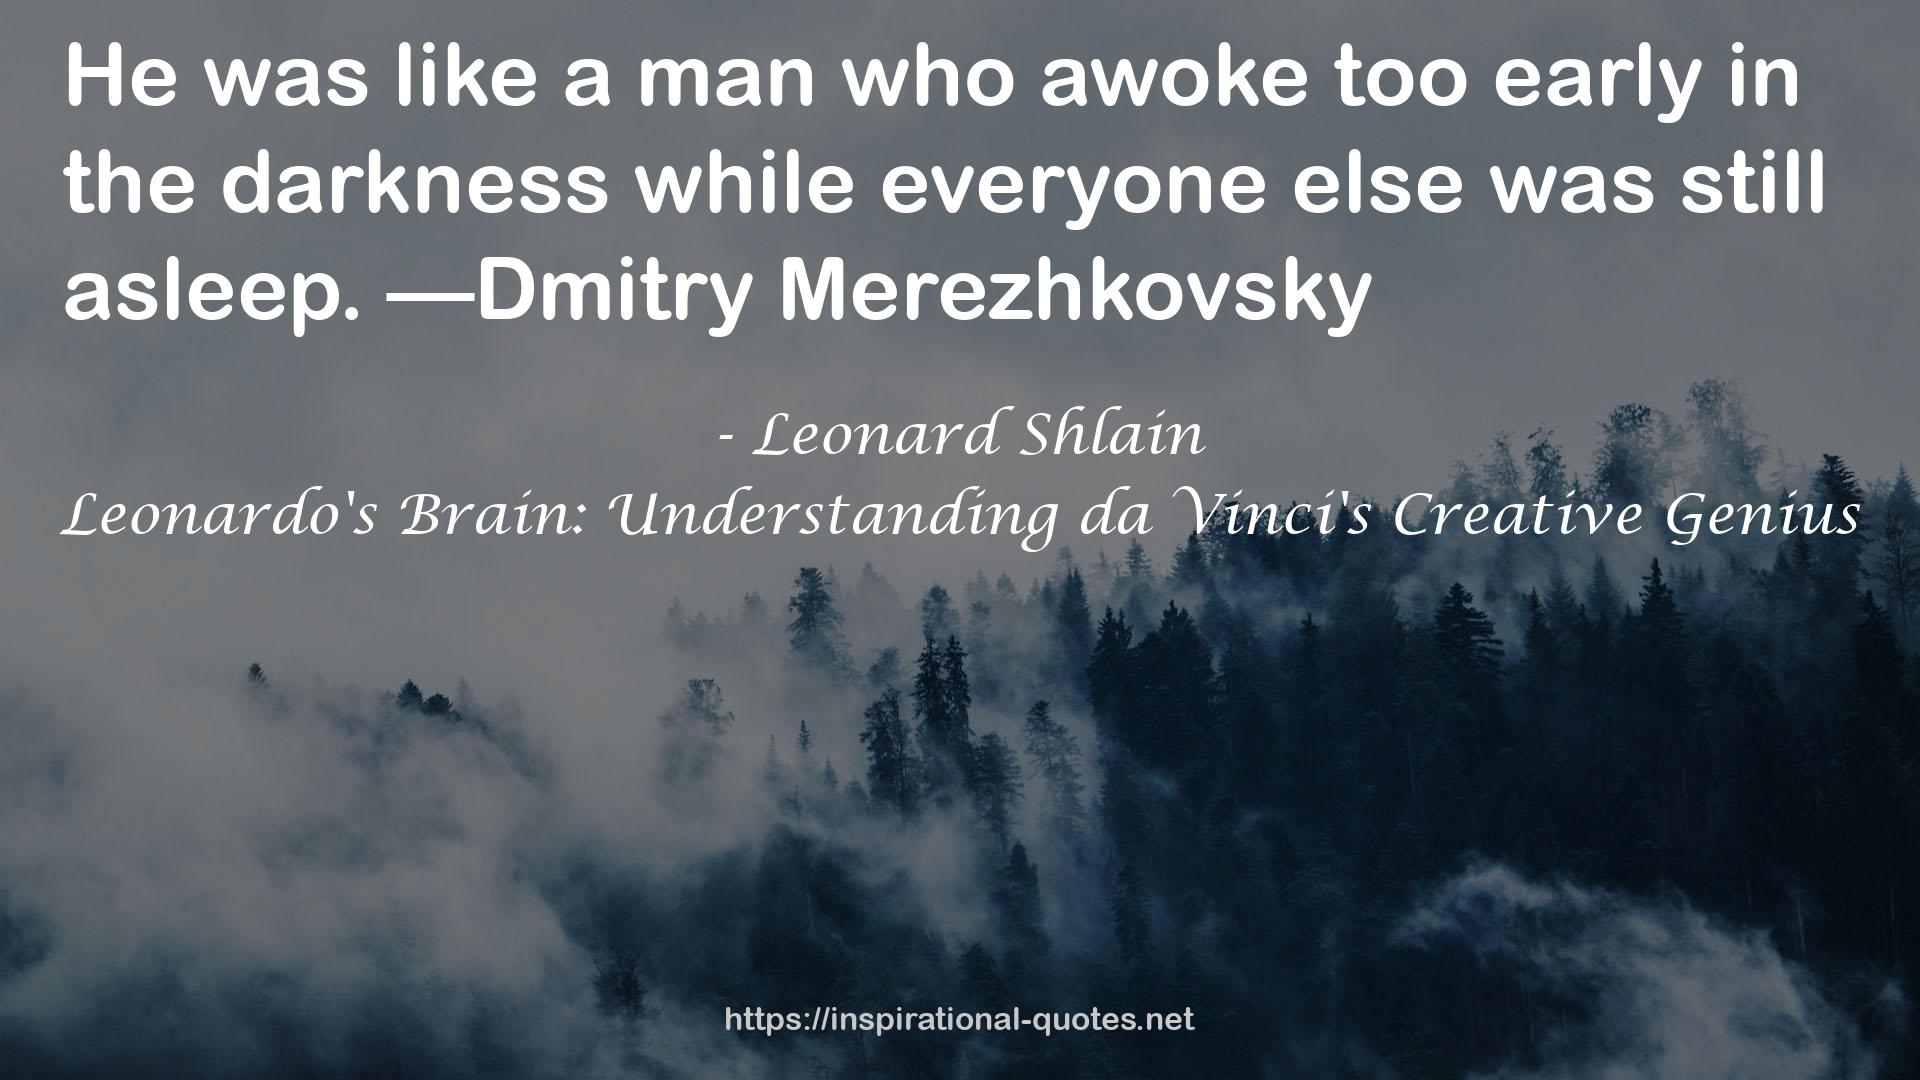 Leonardo's Brain: Understanding da Vinci's Creative Genius QUOTES